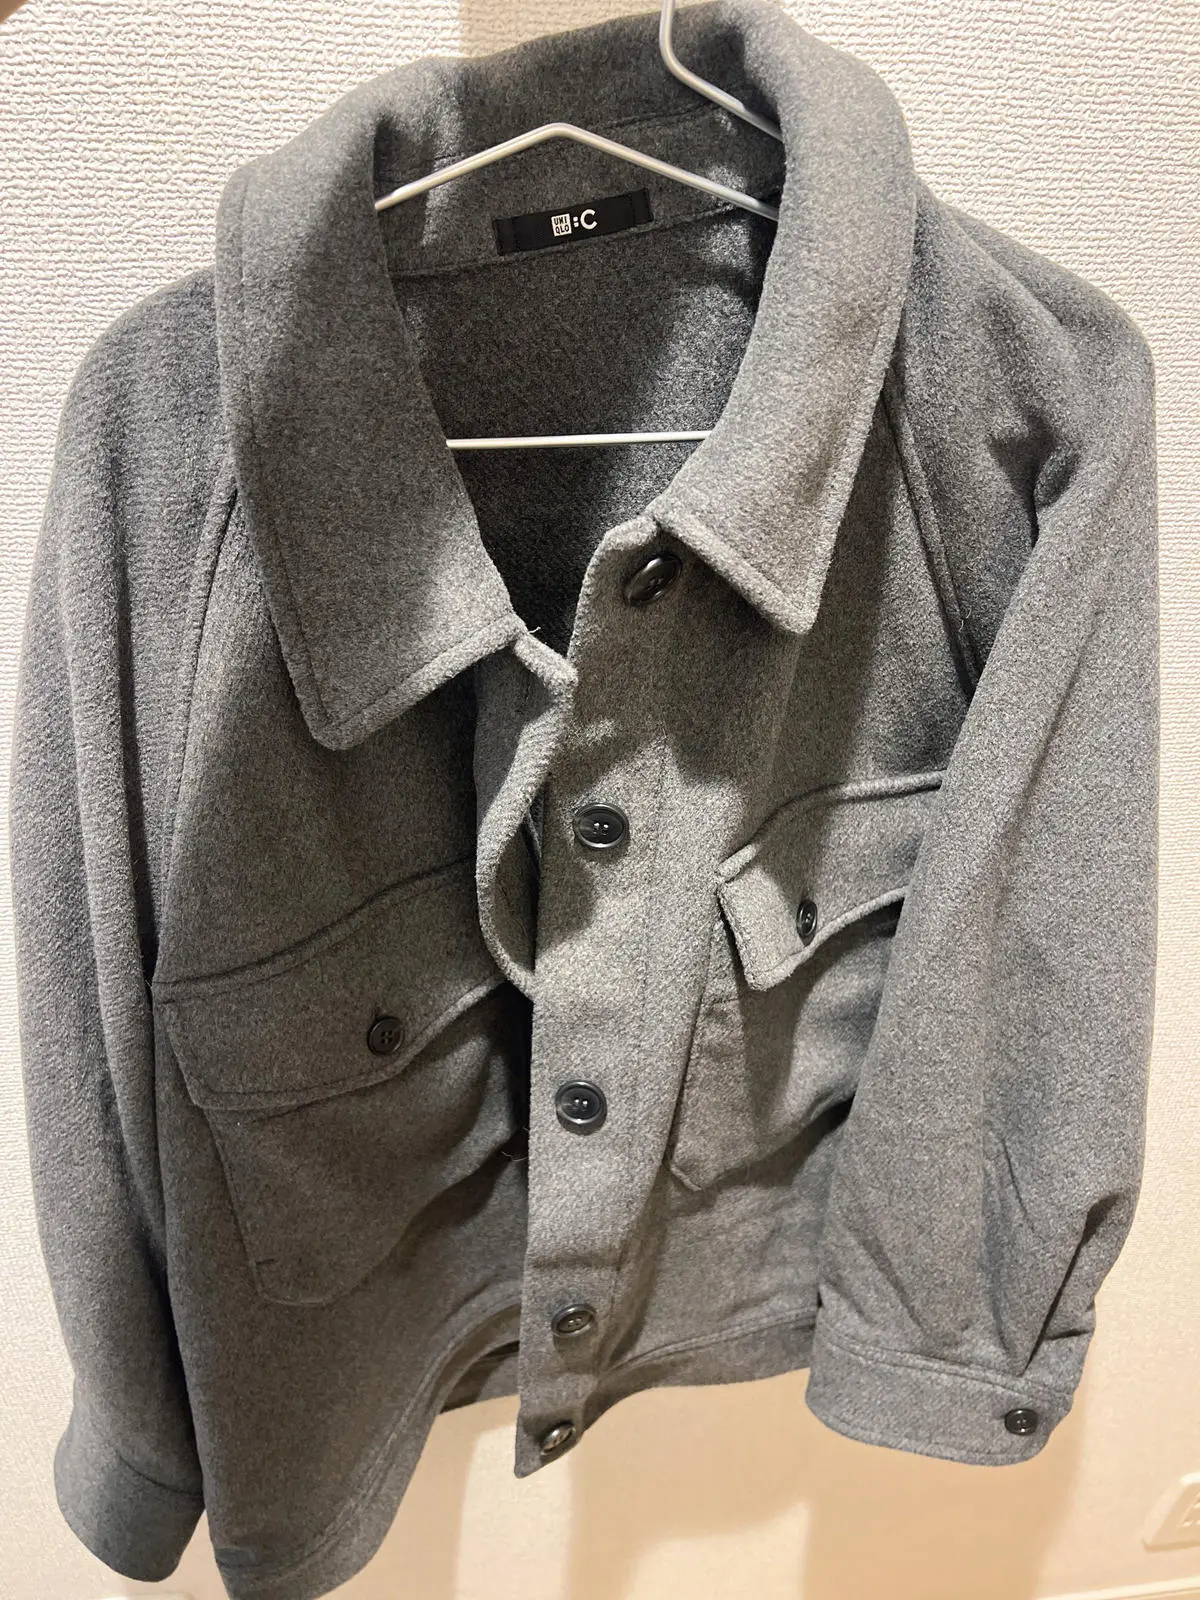 MIUさんが購入した『ユニクロ』オーバーサイズジャケット グレー